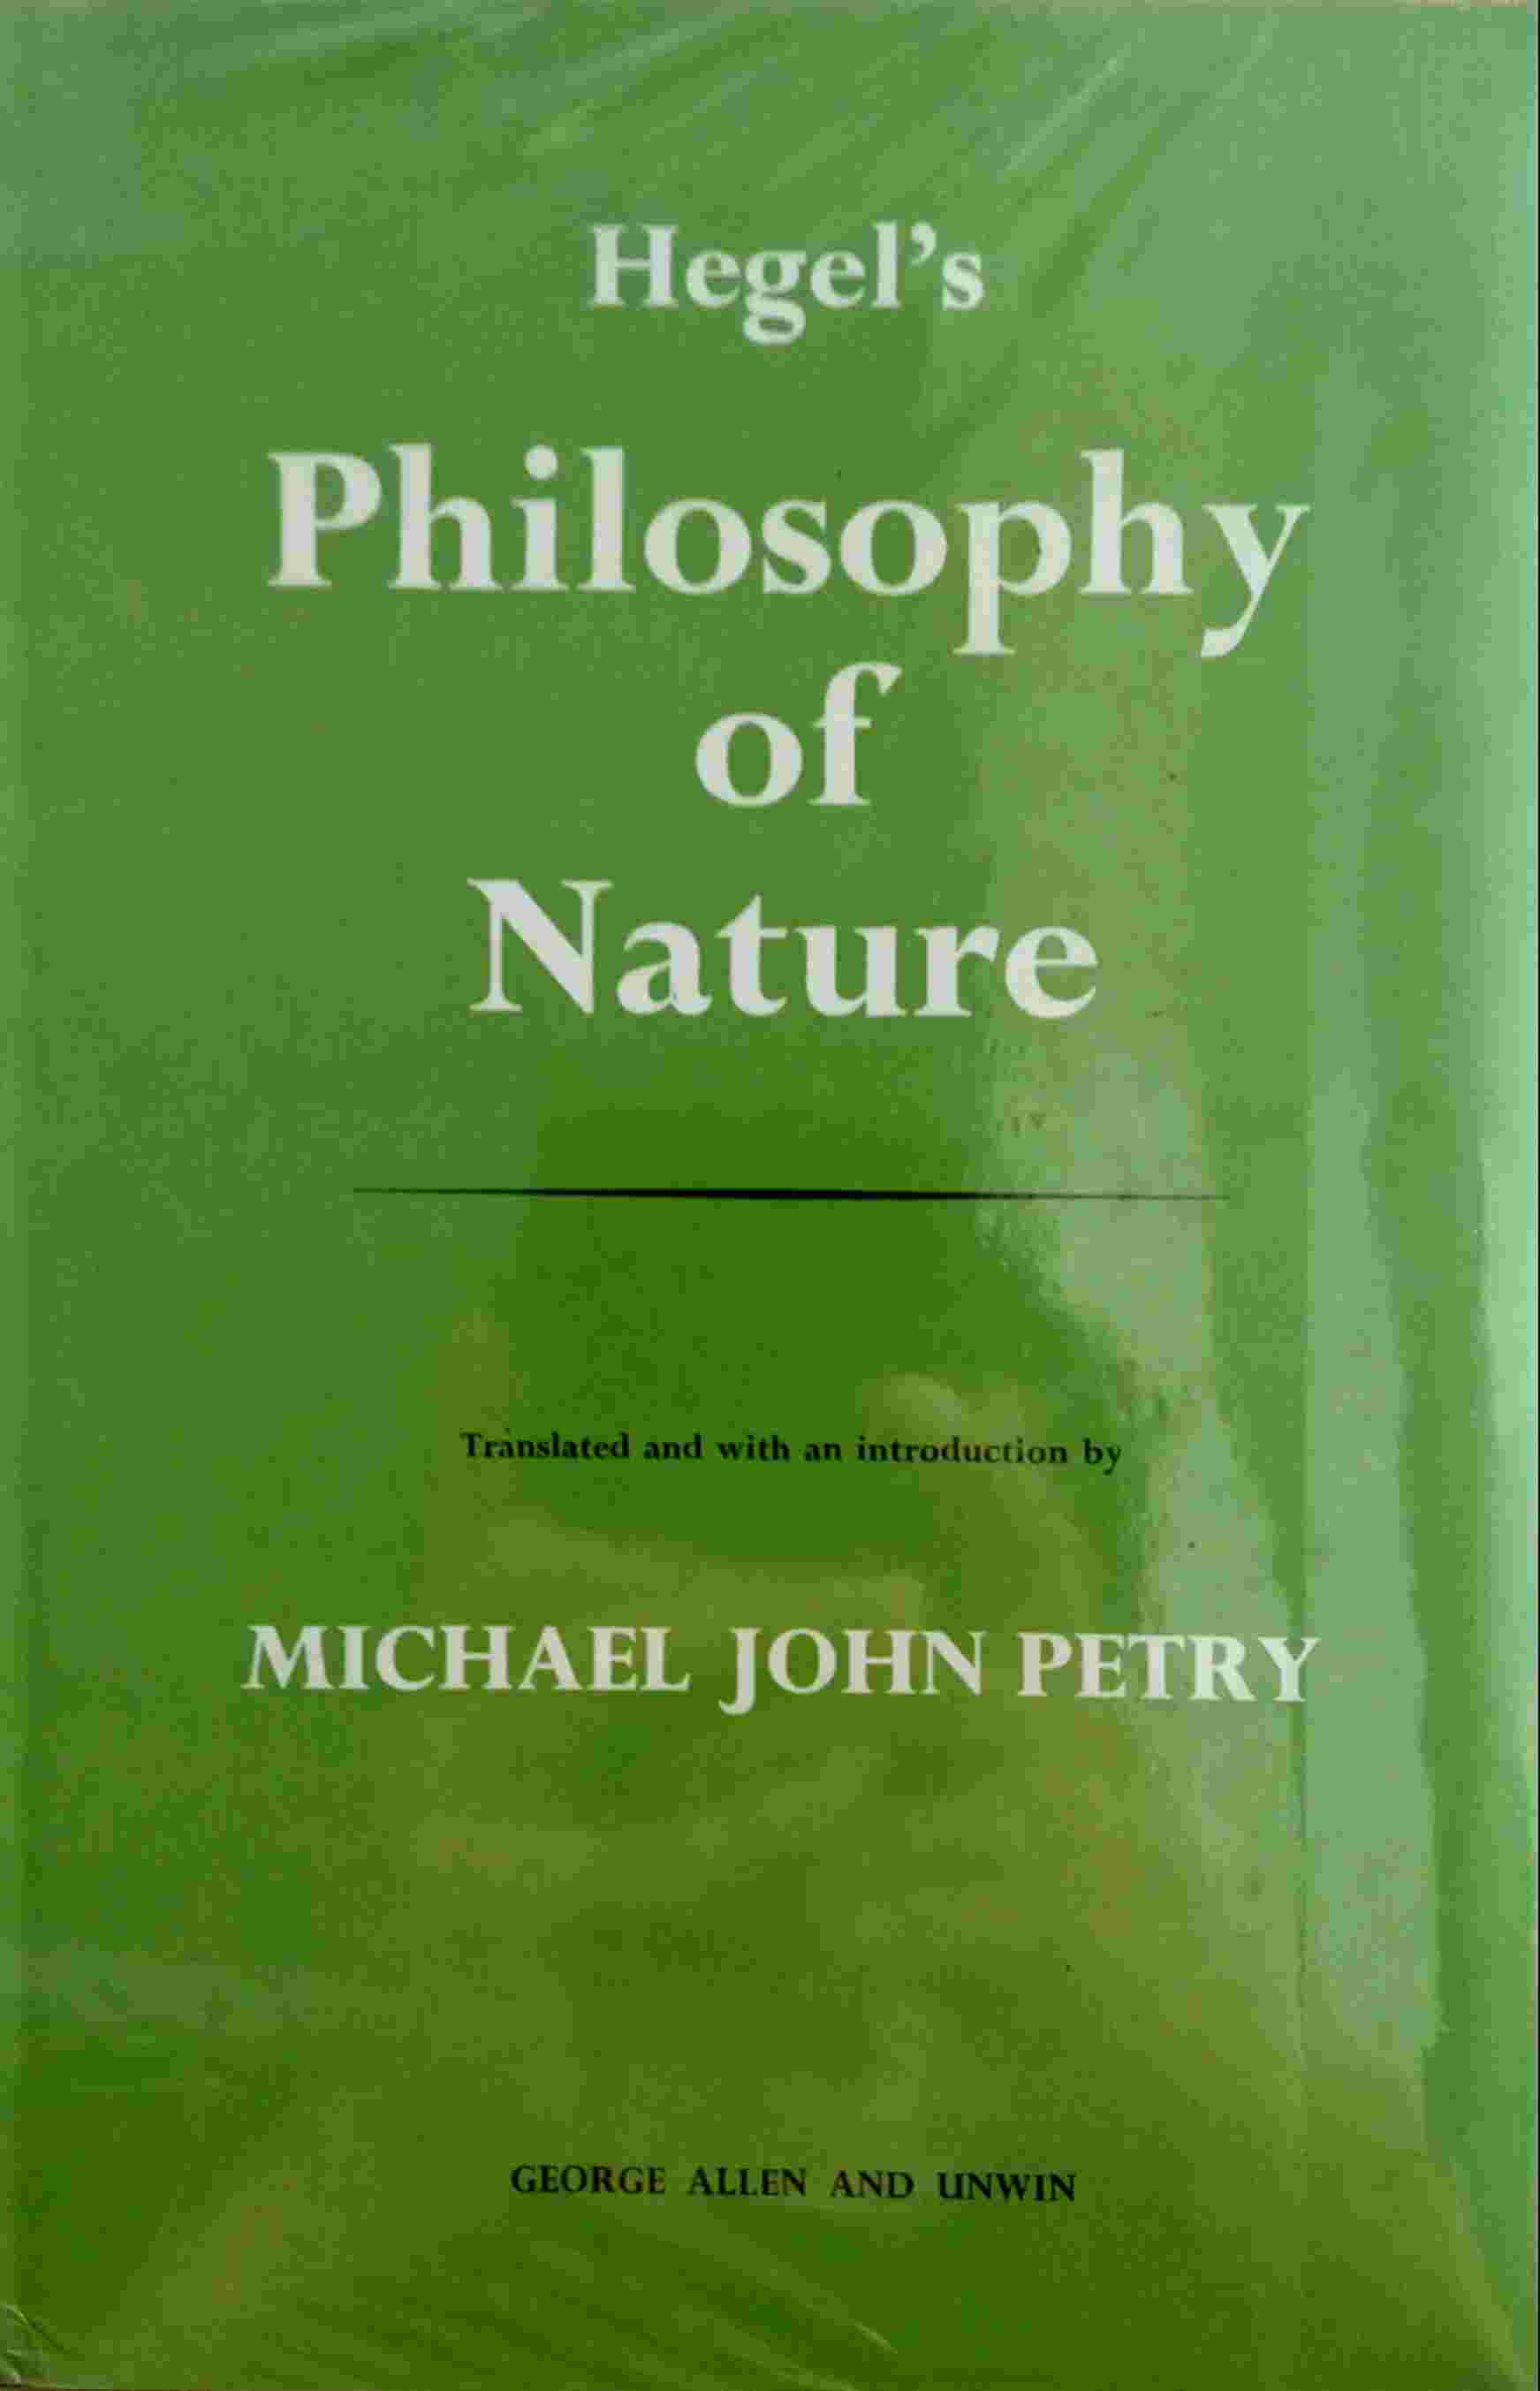 HEGEL's PHILOSOPHY OF NATURE